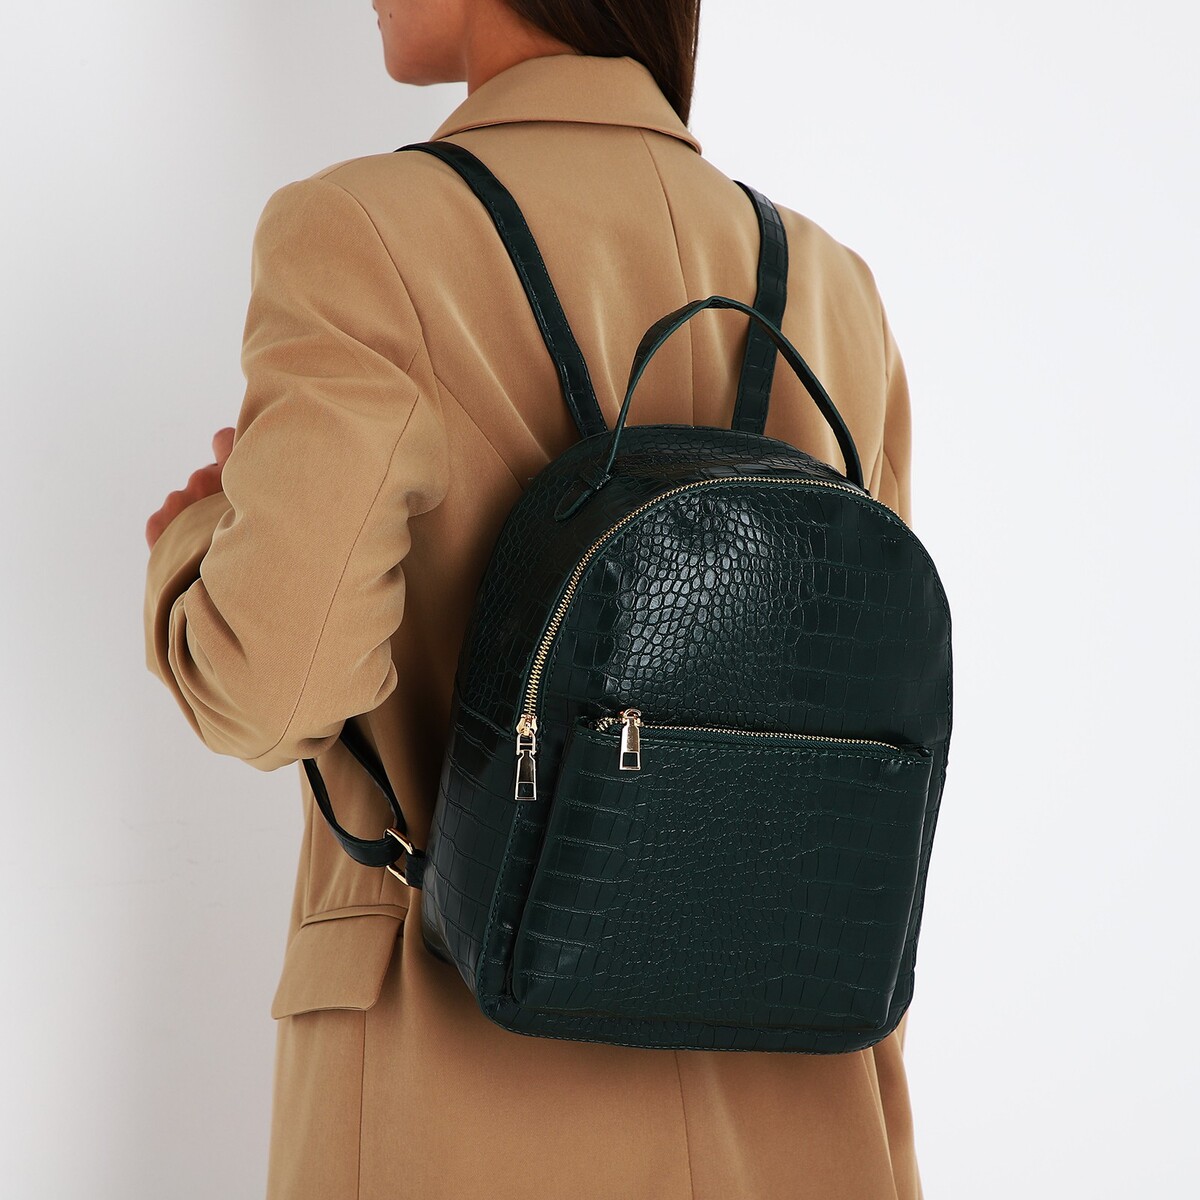 Рюкзак женский из искусственной кожи на молнии, 1 карман, цвет зеленый рюкзак текстильный tennis 46х30х10 см вертик карман зеленый